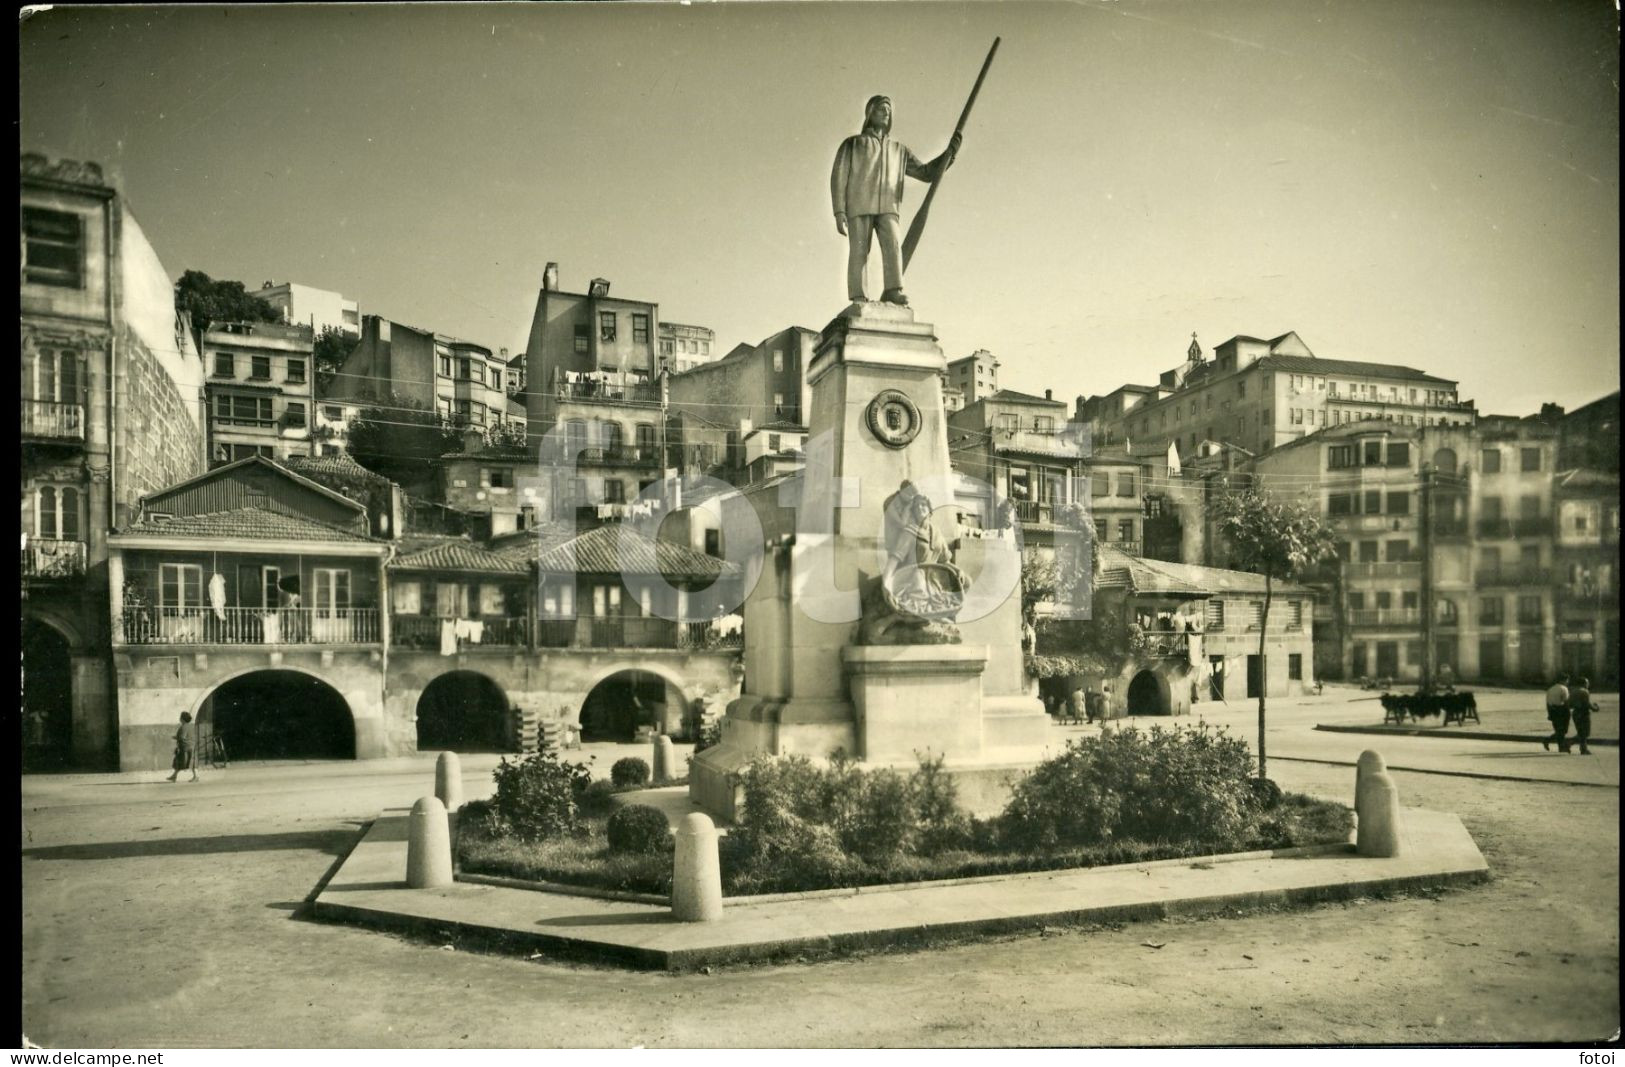 1960 REAL PHOTO FOTO POSTCARD CALLE VIGO PONTEVEDRA GALICIA SPAIN  ESPANA CARTE POSTALE - Pontevedra